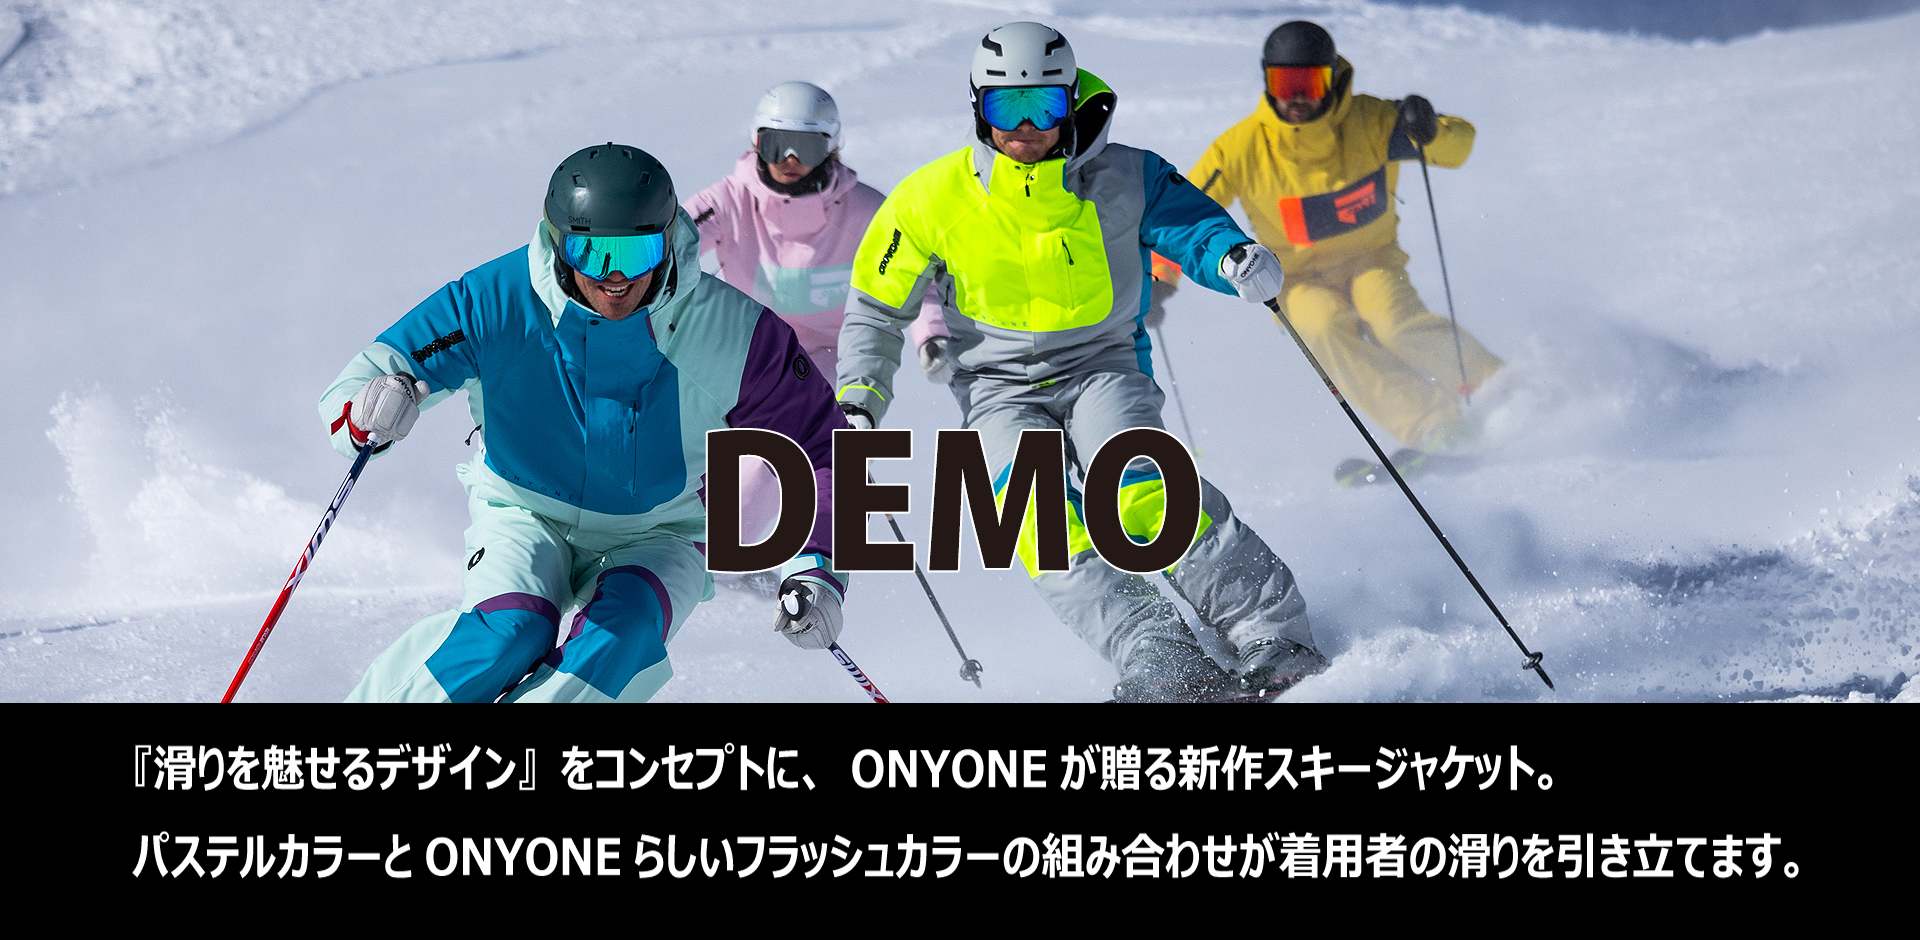 DEMO　オーダー締め切り2024年6月23日 DEMO『滑りを魅せるデザイン』をコンセプトに、ONYONEが贈る新作スキージャケット。